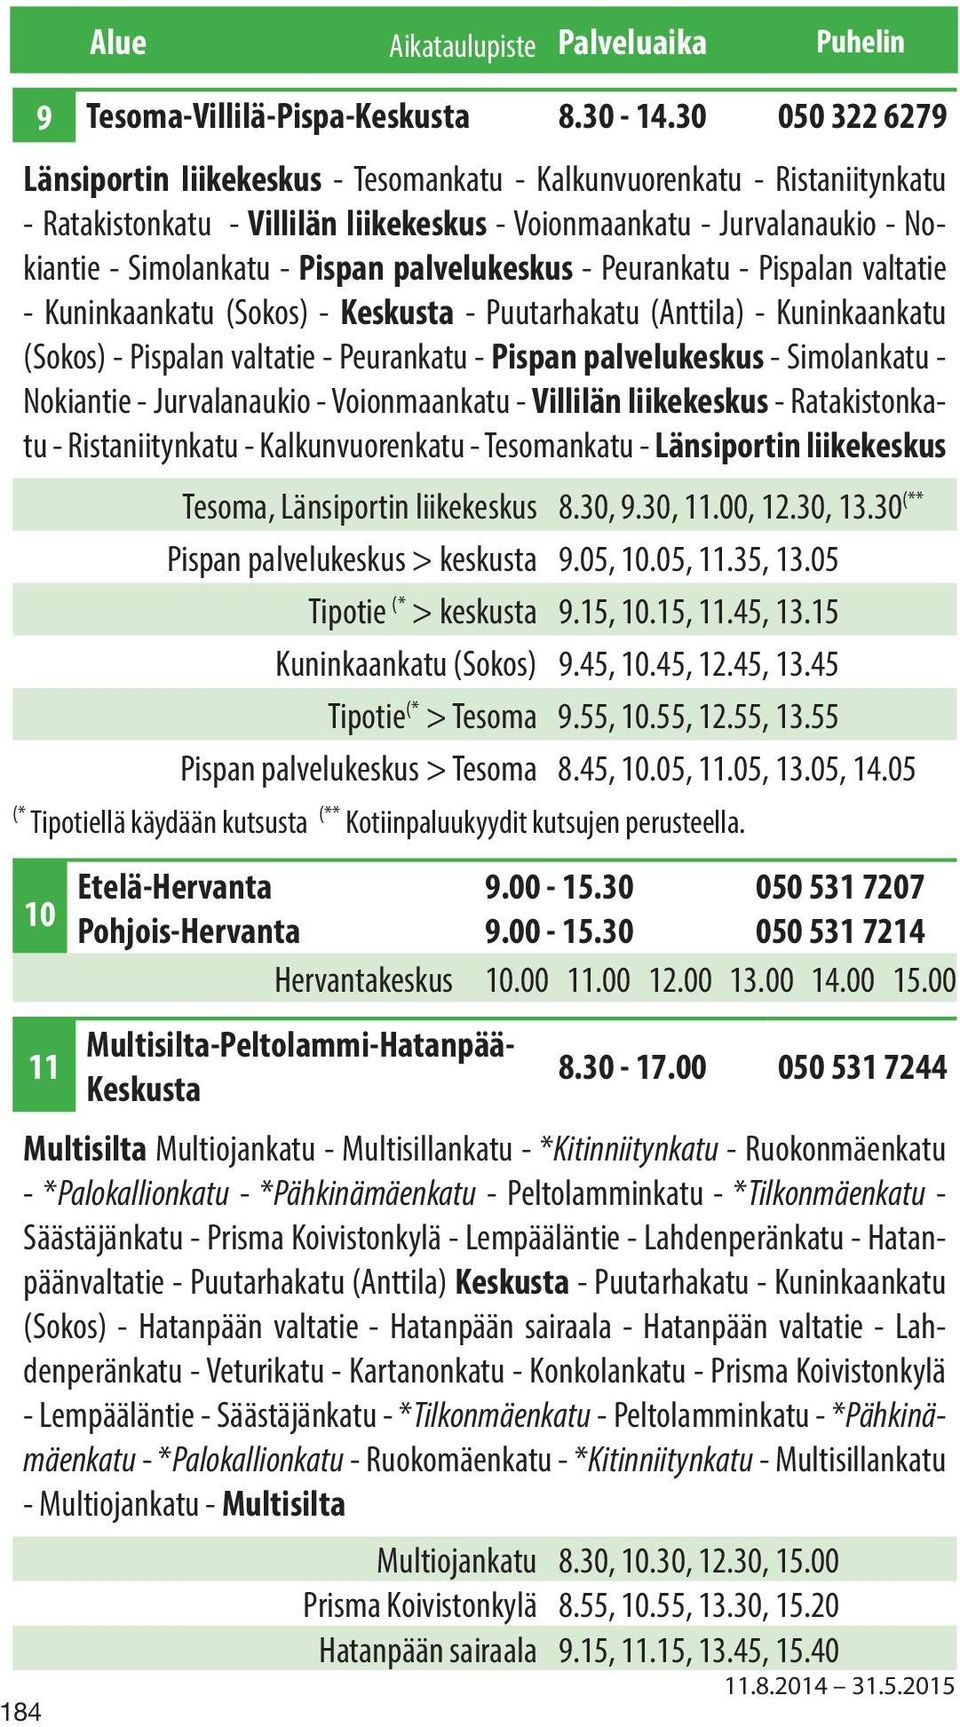 palvelukeskus - Peurankatu - Pispalan valtatie - Kuninkaankatu (Sokos) - Keskusta - Puutarhakatu (Anttila) - Kuninkaankatu (Sokos) - Pispalan valtatie - Peurankatu - Pispan palvelukeskus -